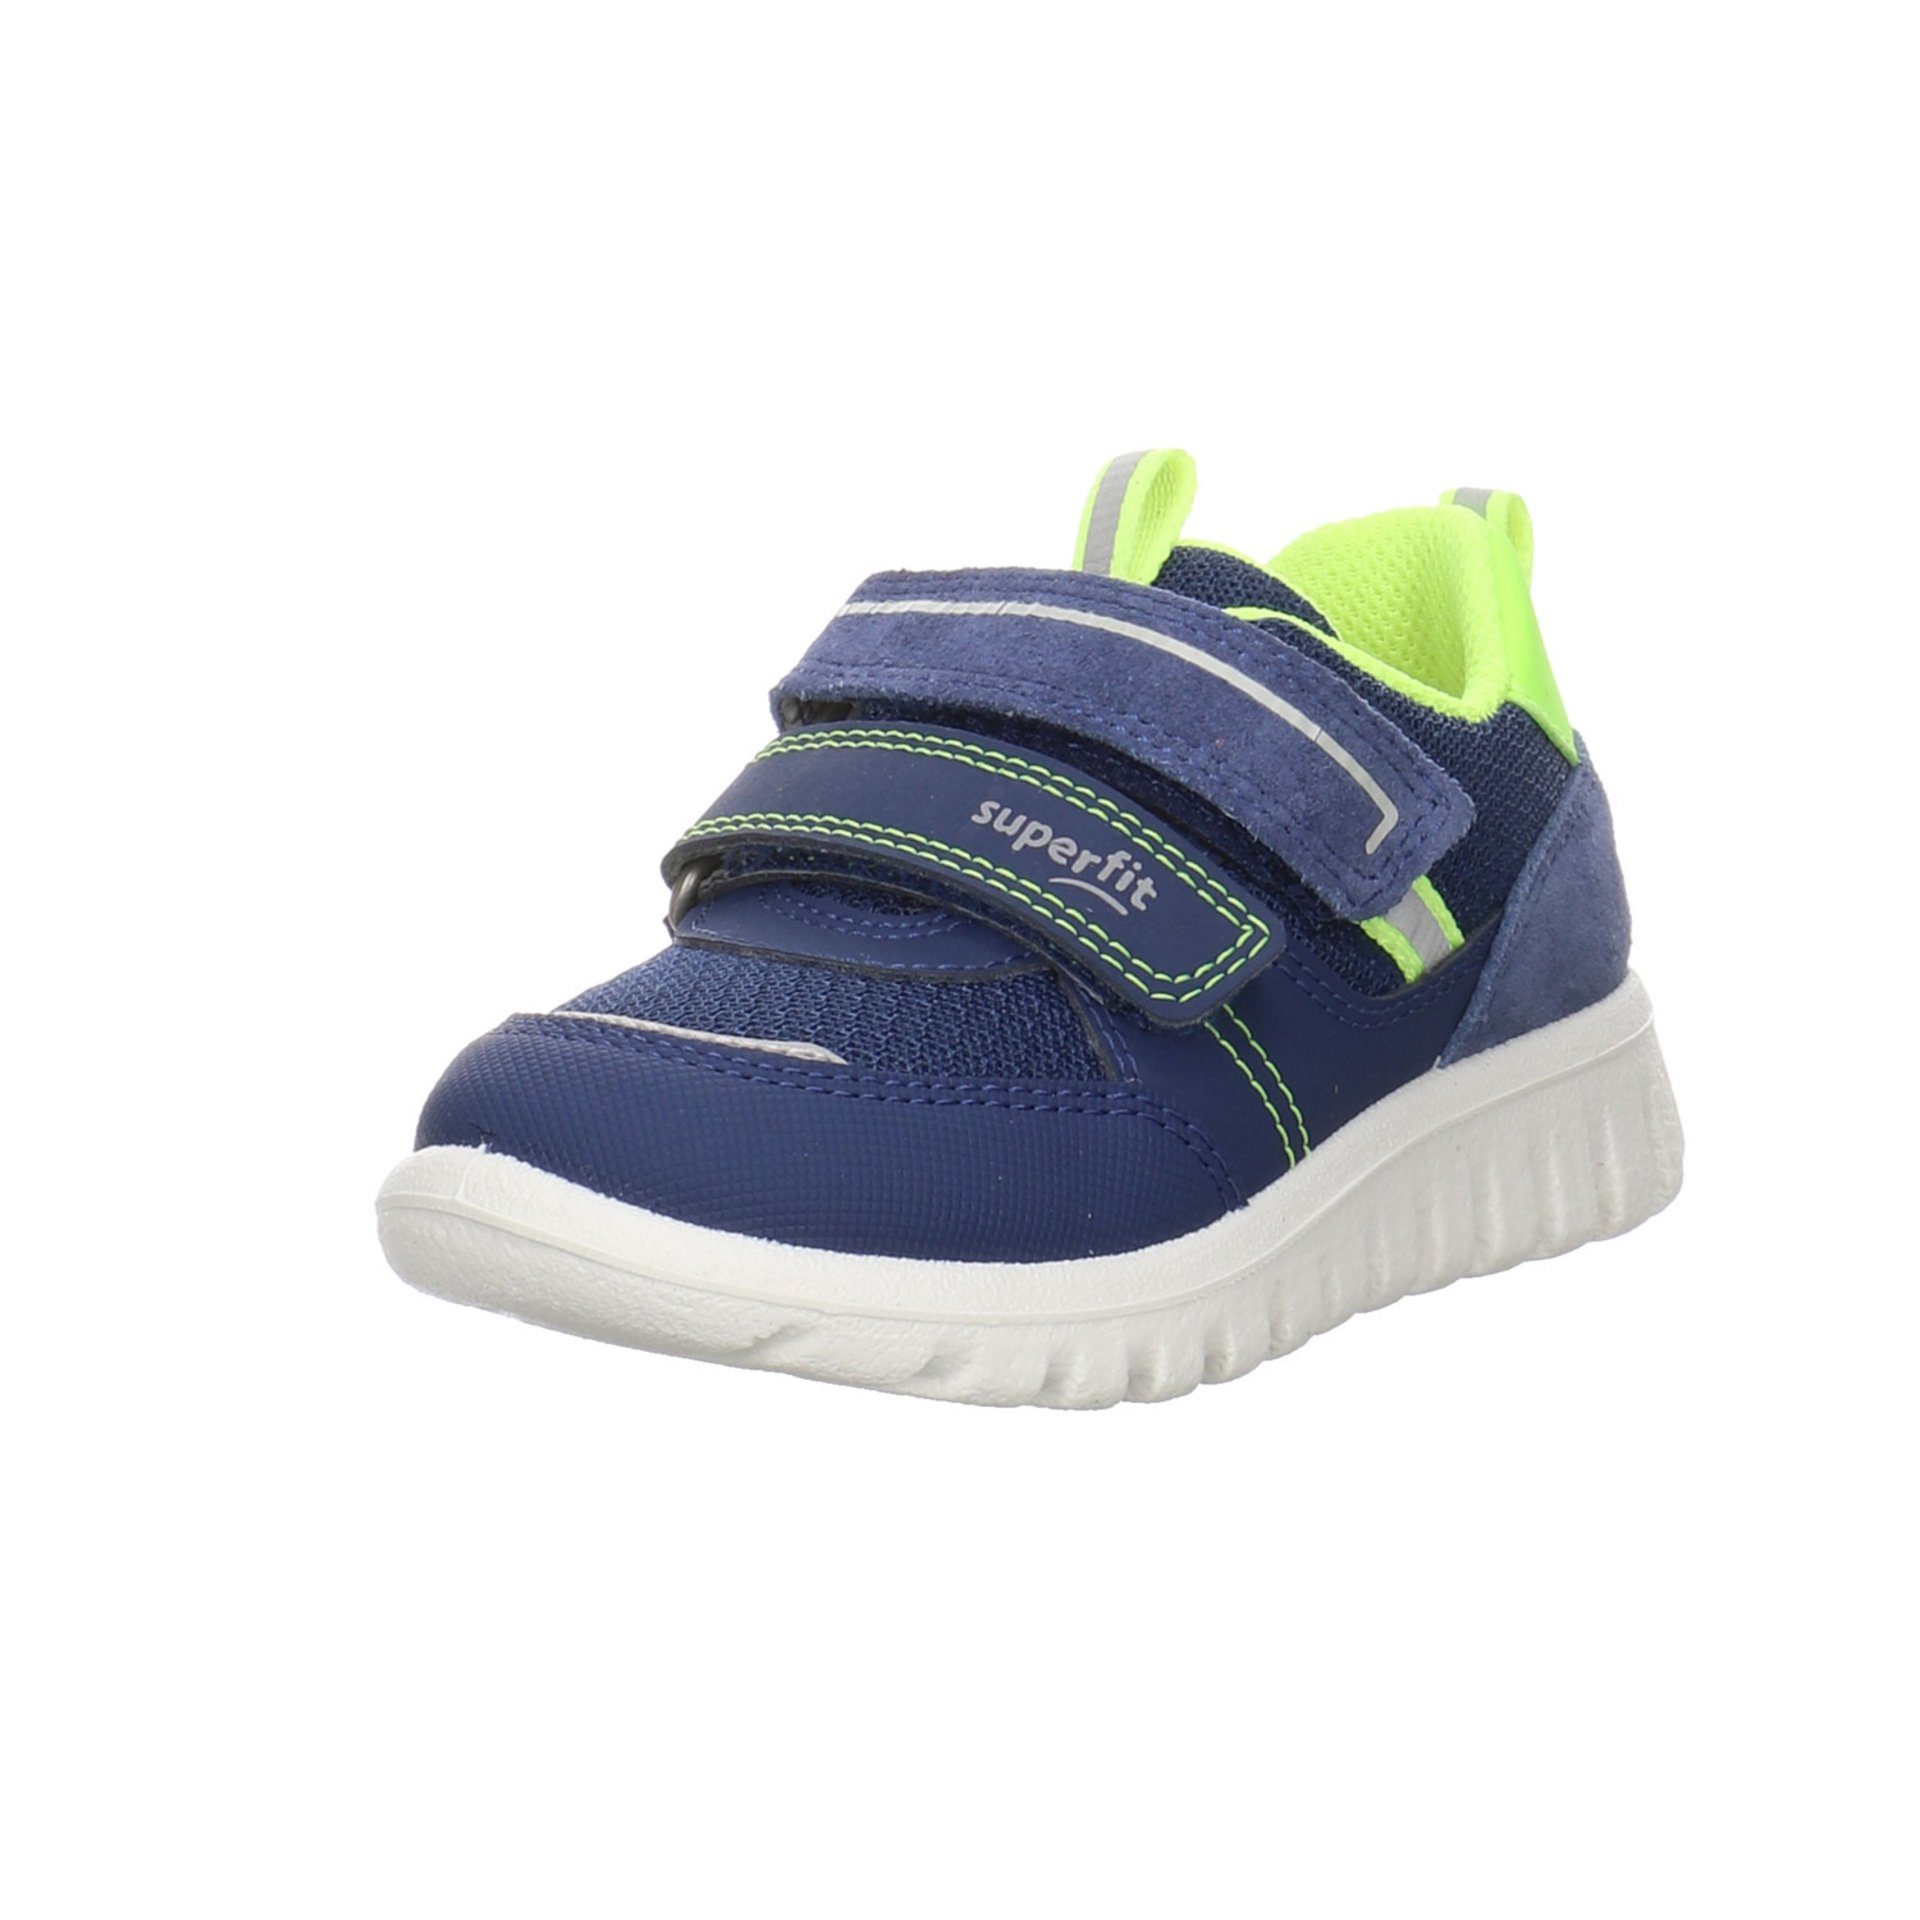 BLAU/GELB Synthetikkombination Details (20401985) Sneaker reflektierende Sneaker Mini Superfit Sport7